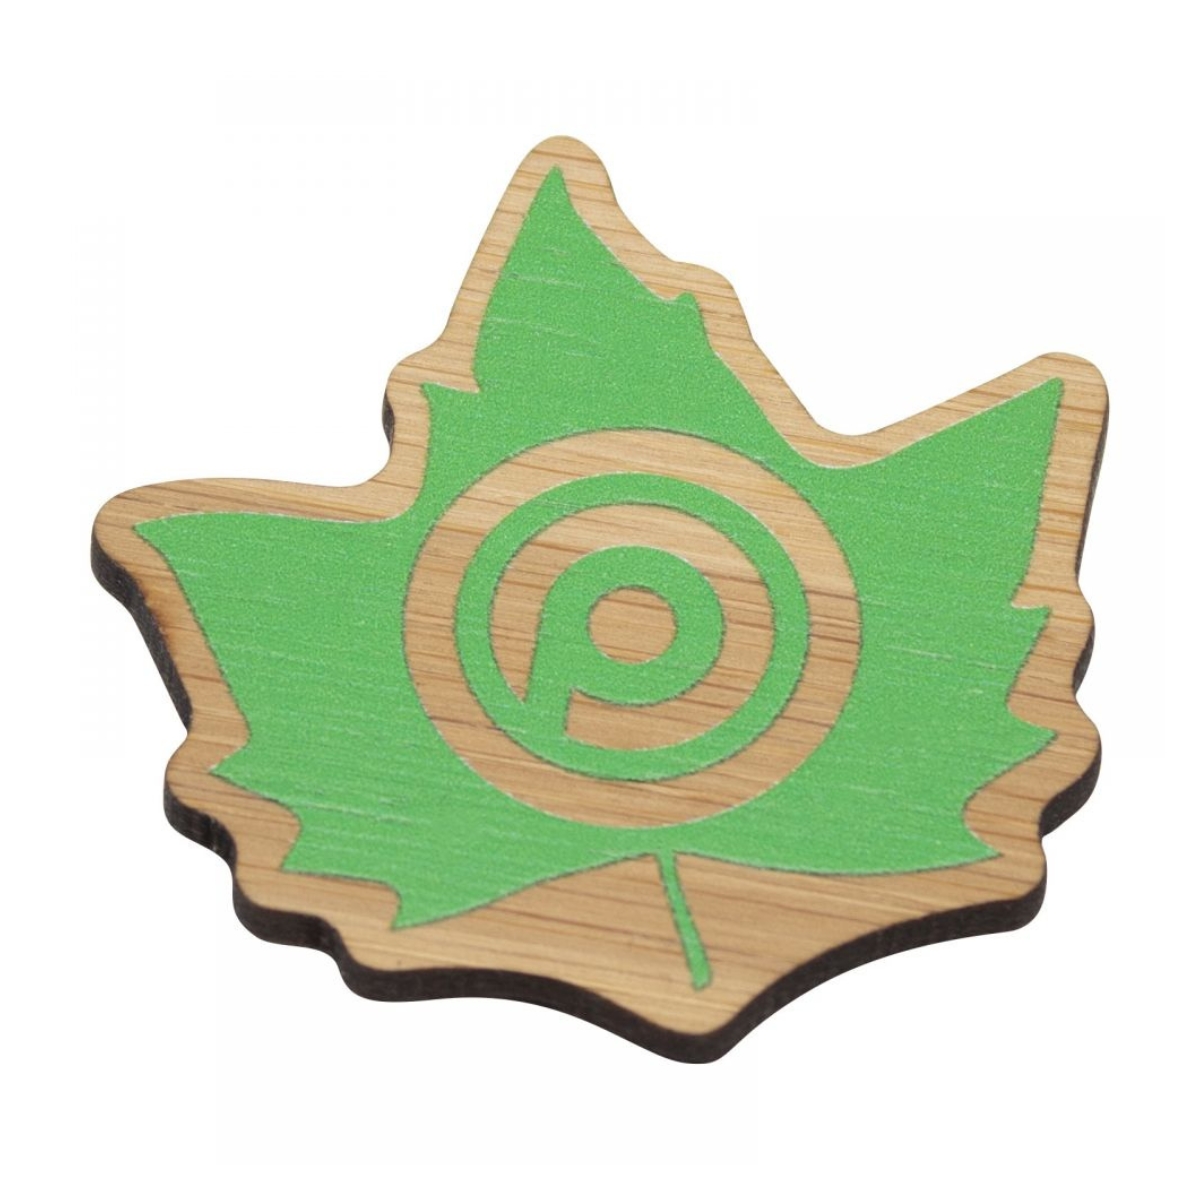 Wooden Badges